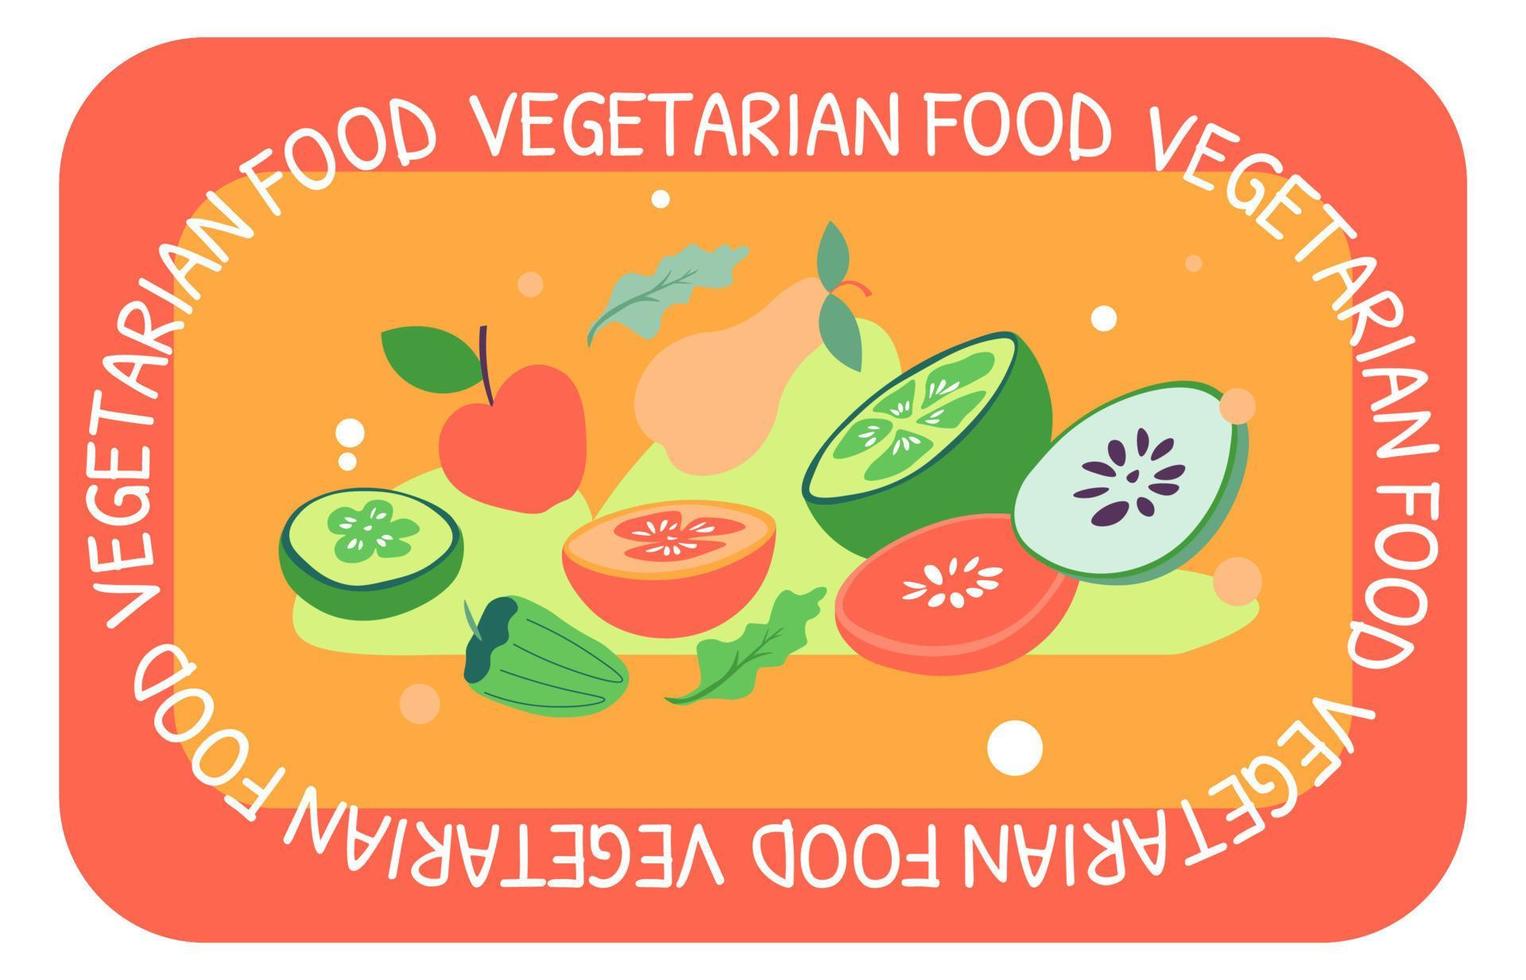 comida vegetariana, banner de menú de verduras de comida orgánica vector